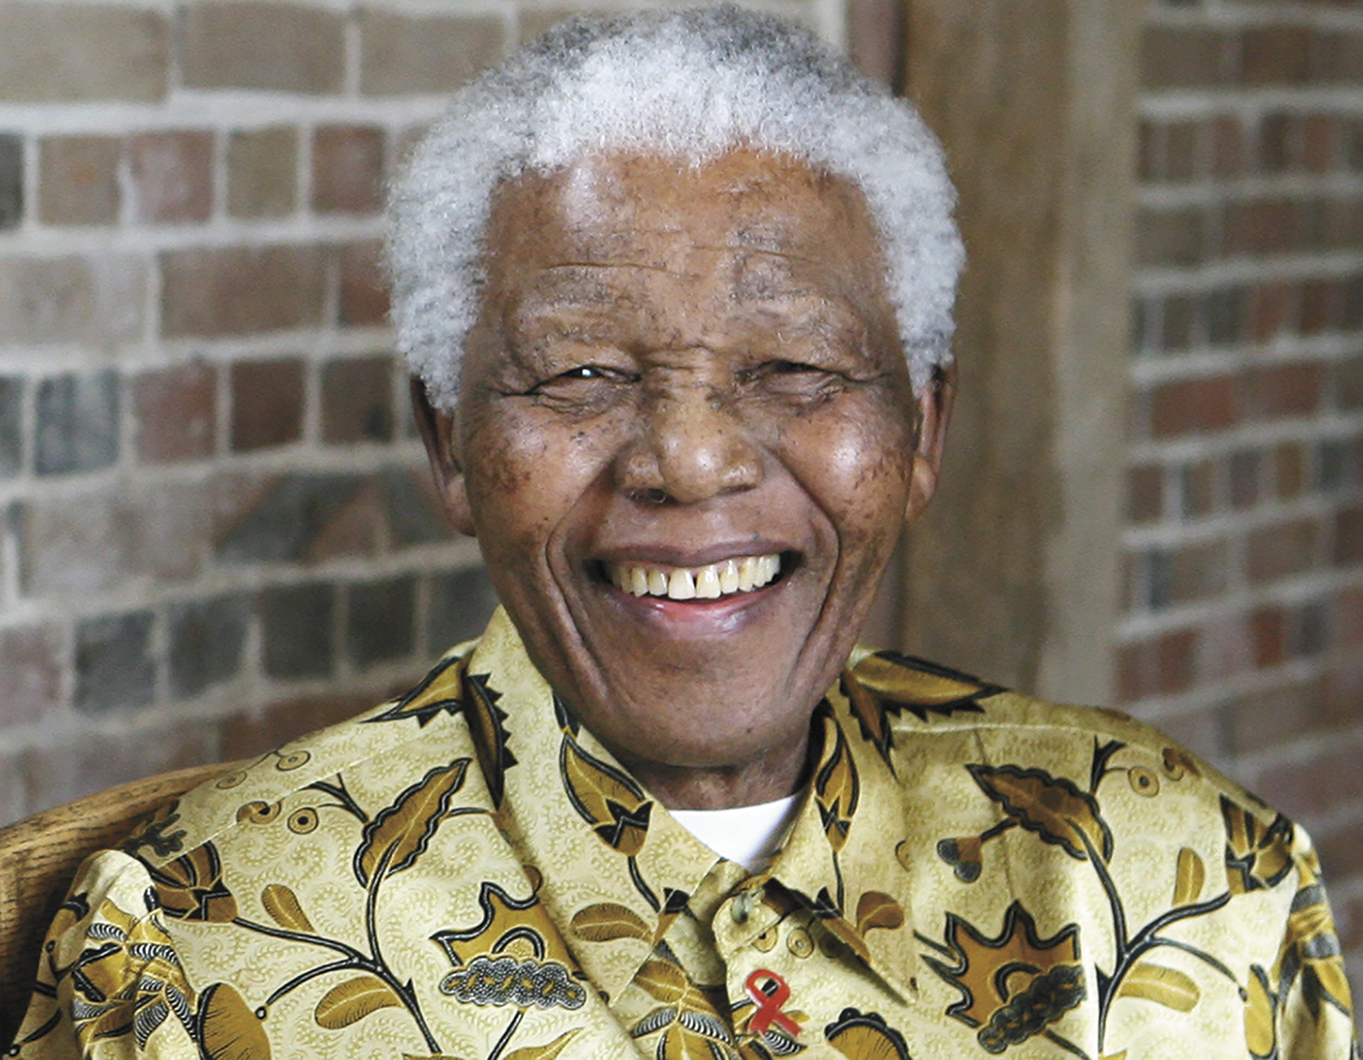 Fotografia. Mandela, homem negro de cabelos curtos, brancos, sorrindo. Ele usa uma camisa estampada.